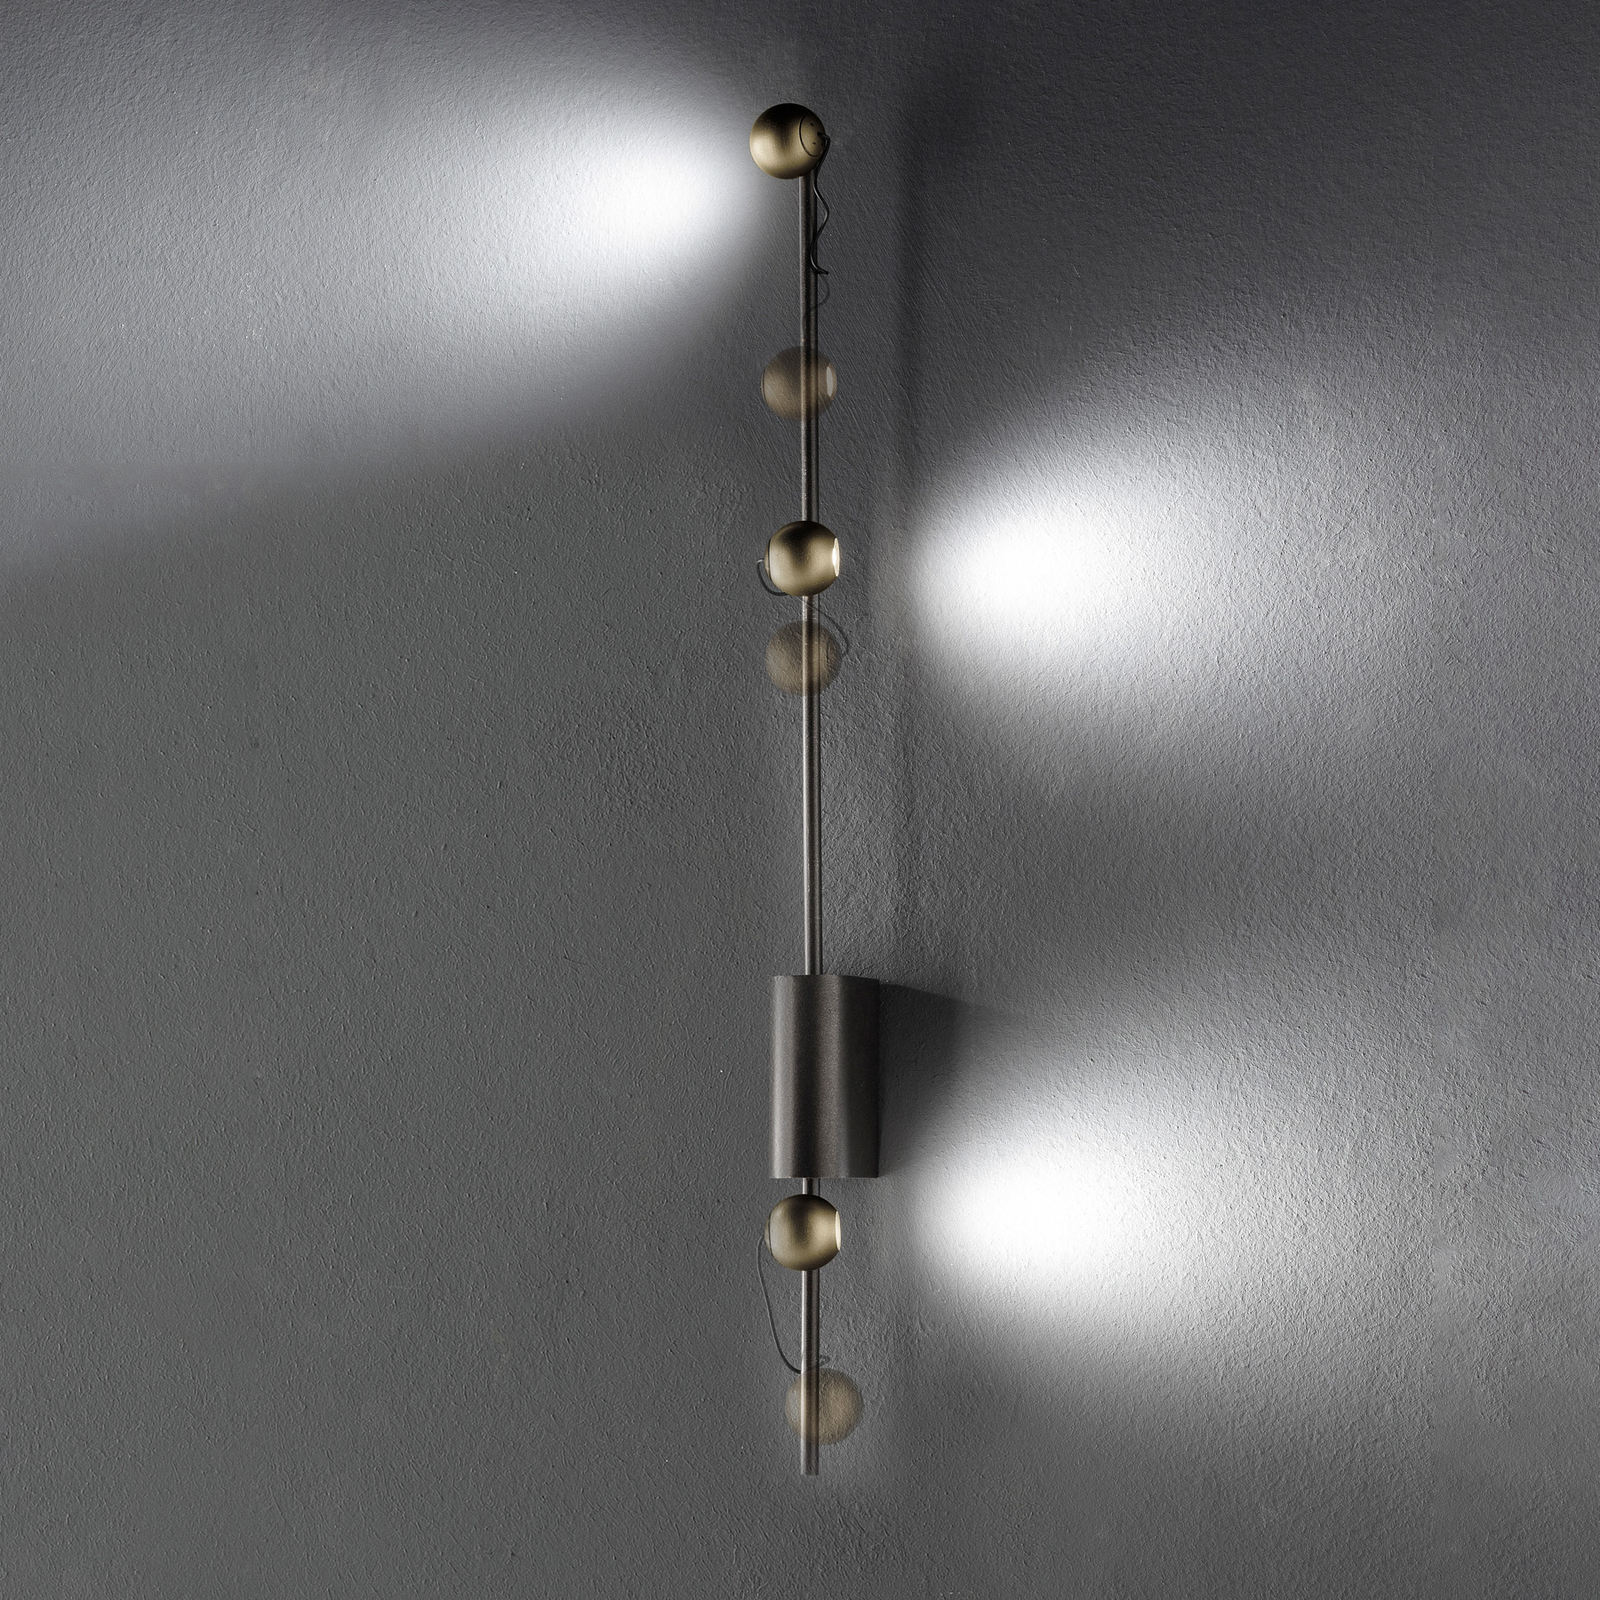 LED-vägglampa Magnetic C, brons/guld